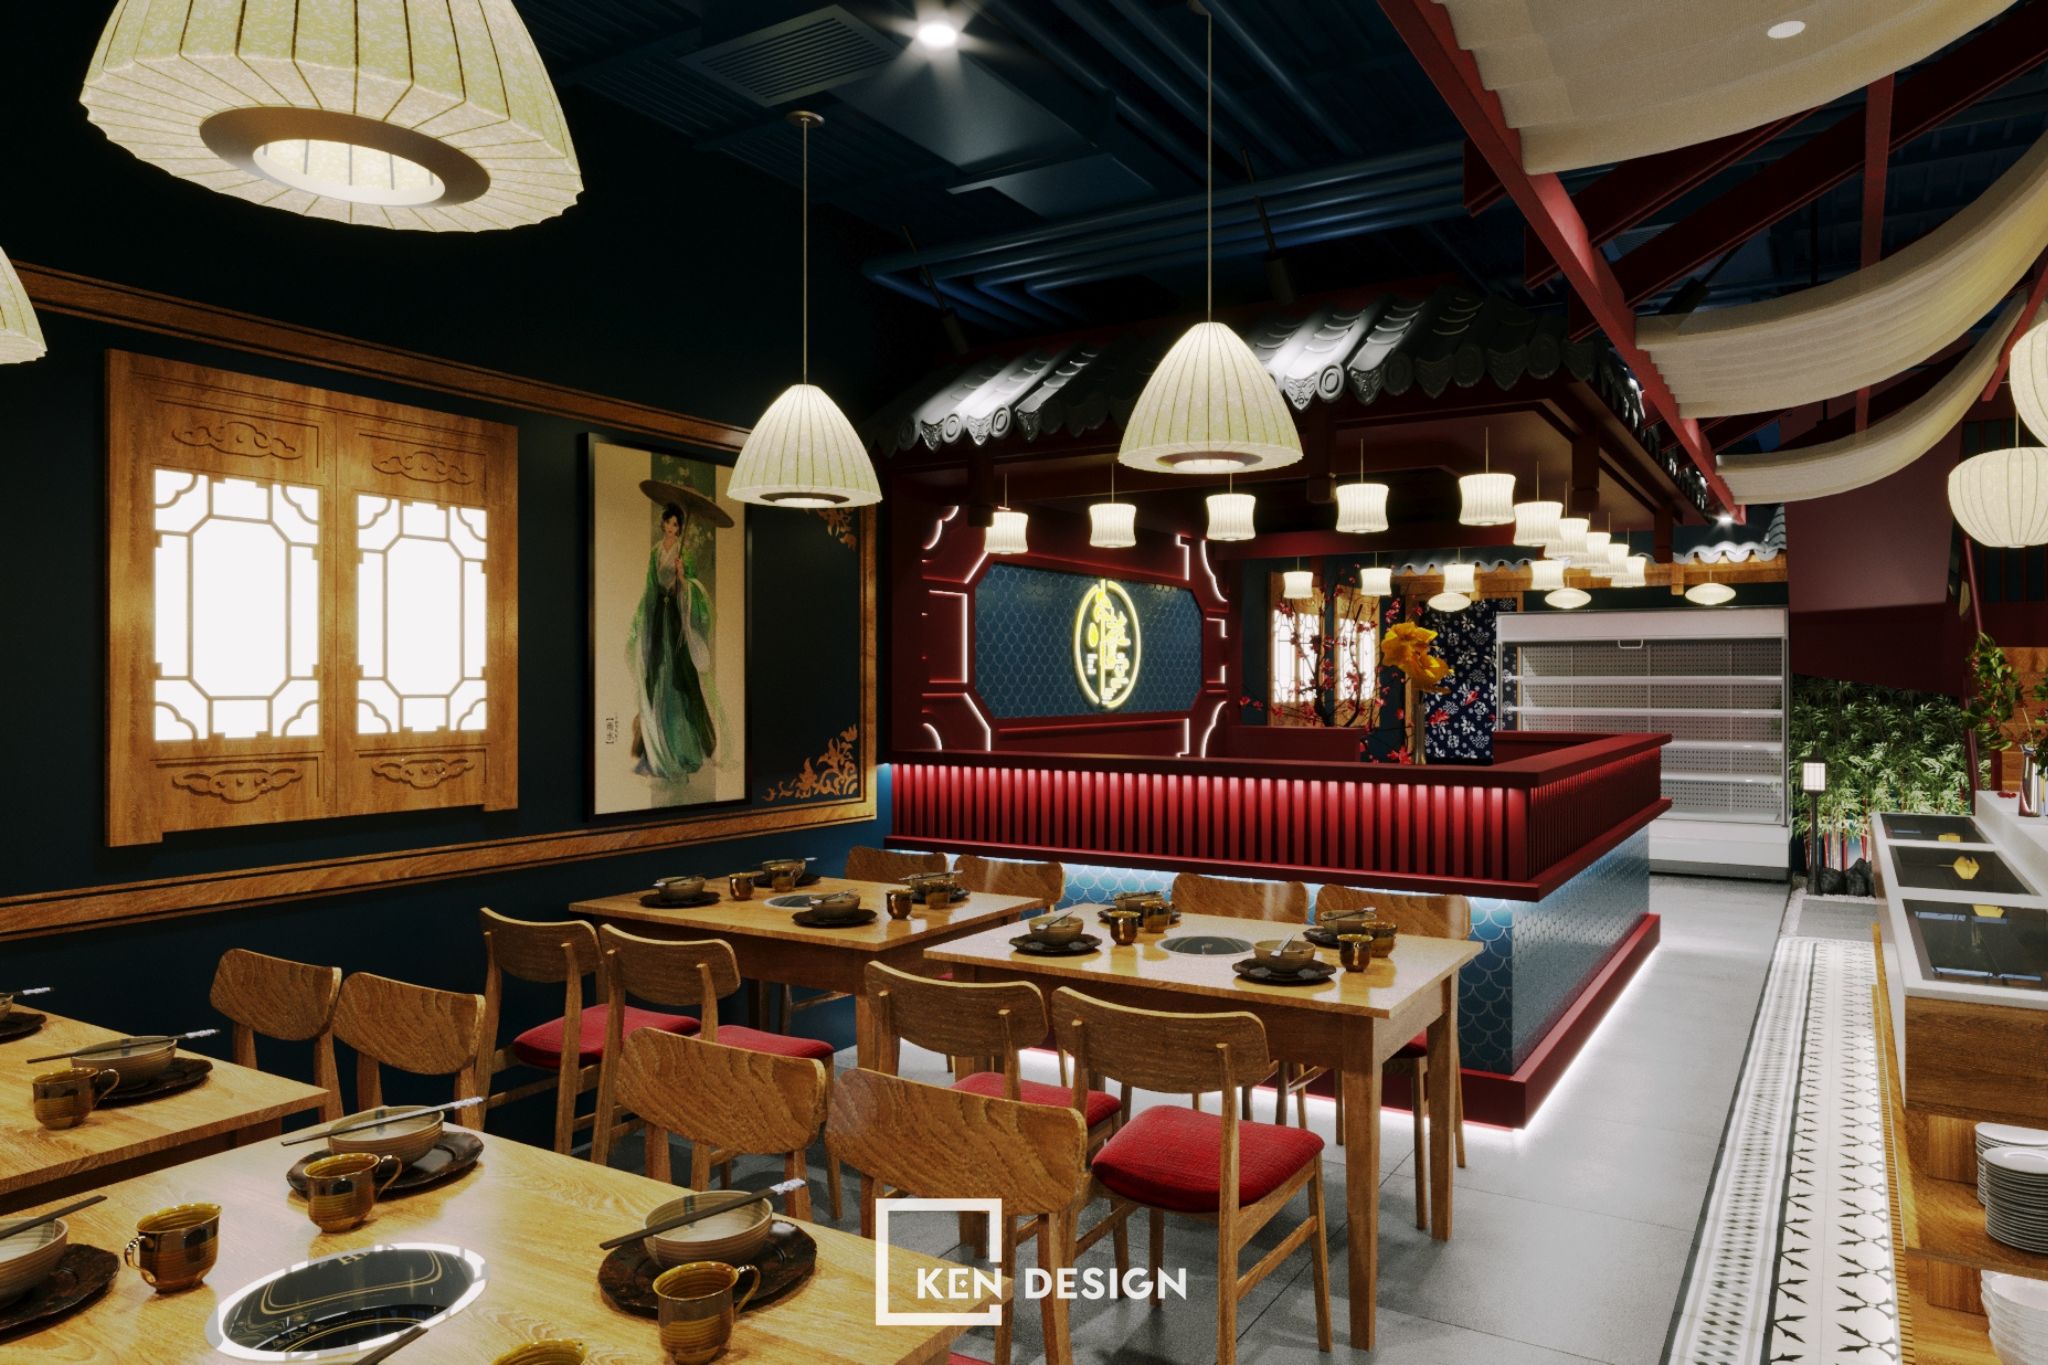  thiết kế nhà hàng Chuan Yue Shi Kong